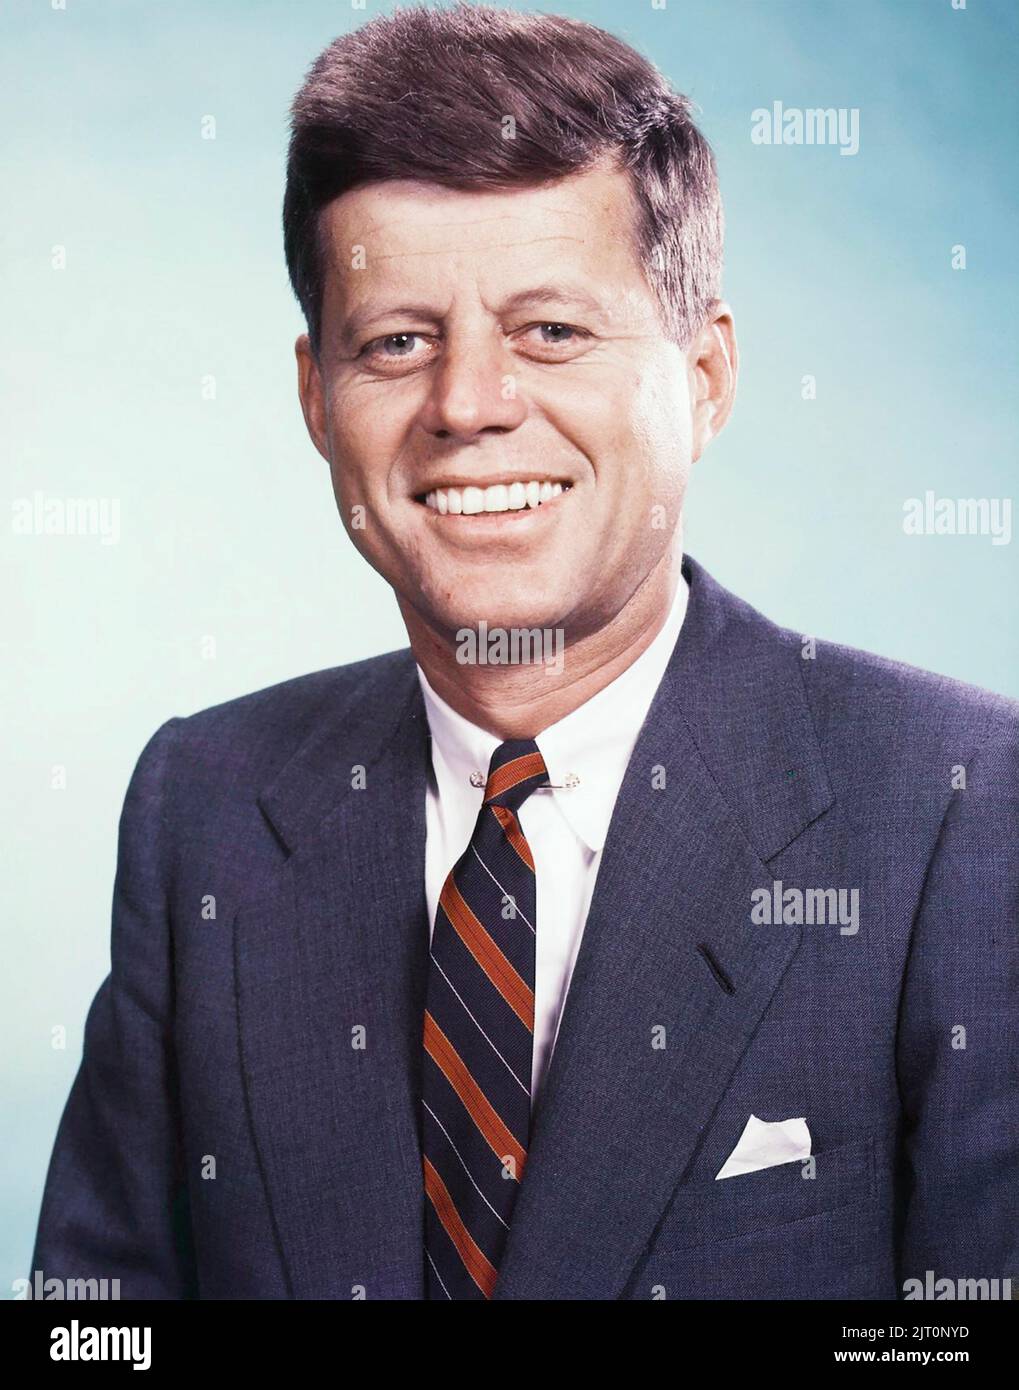 OHNS F. KENNEDY (1917-1963) als Präsident der Vereinigten Staaten im Jahr 1963 Stockfoto